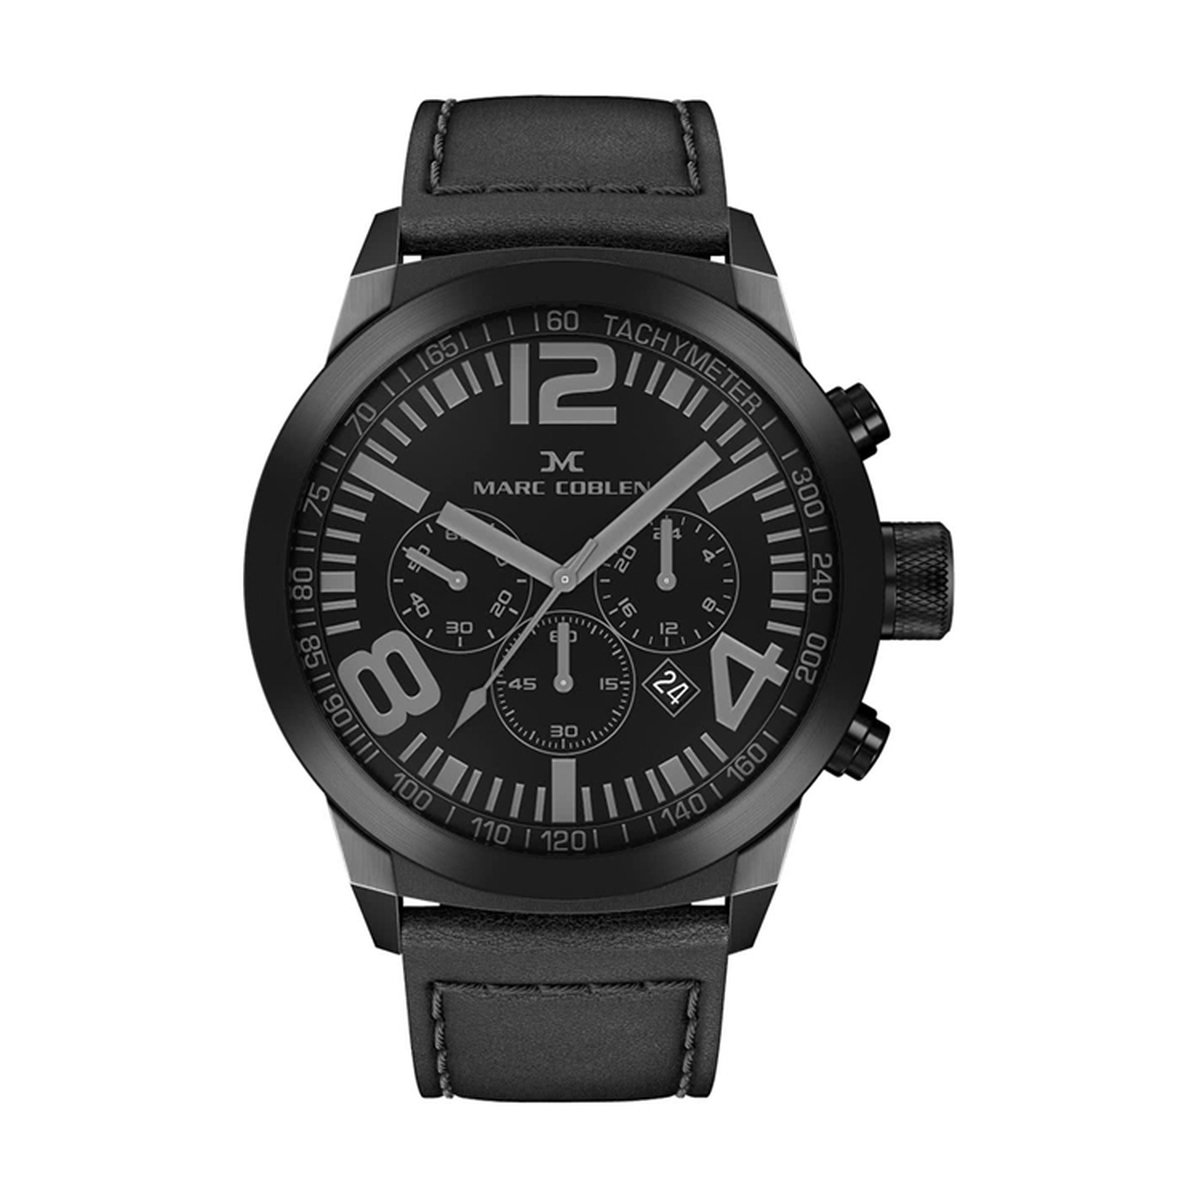 Marc Coblen Chronograaf Horloge voor Dames en Heren - MC42B2 - met Verwisselbare Lunette en Horlogeband - Zwart - 42mm